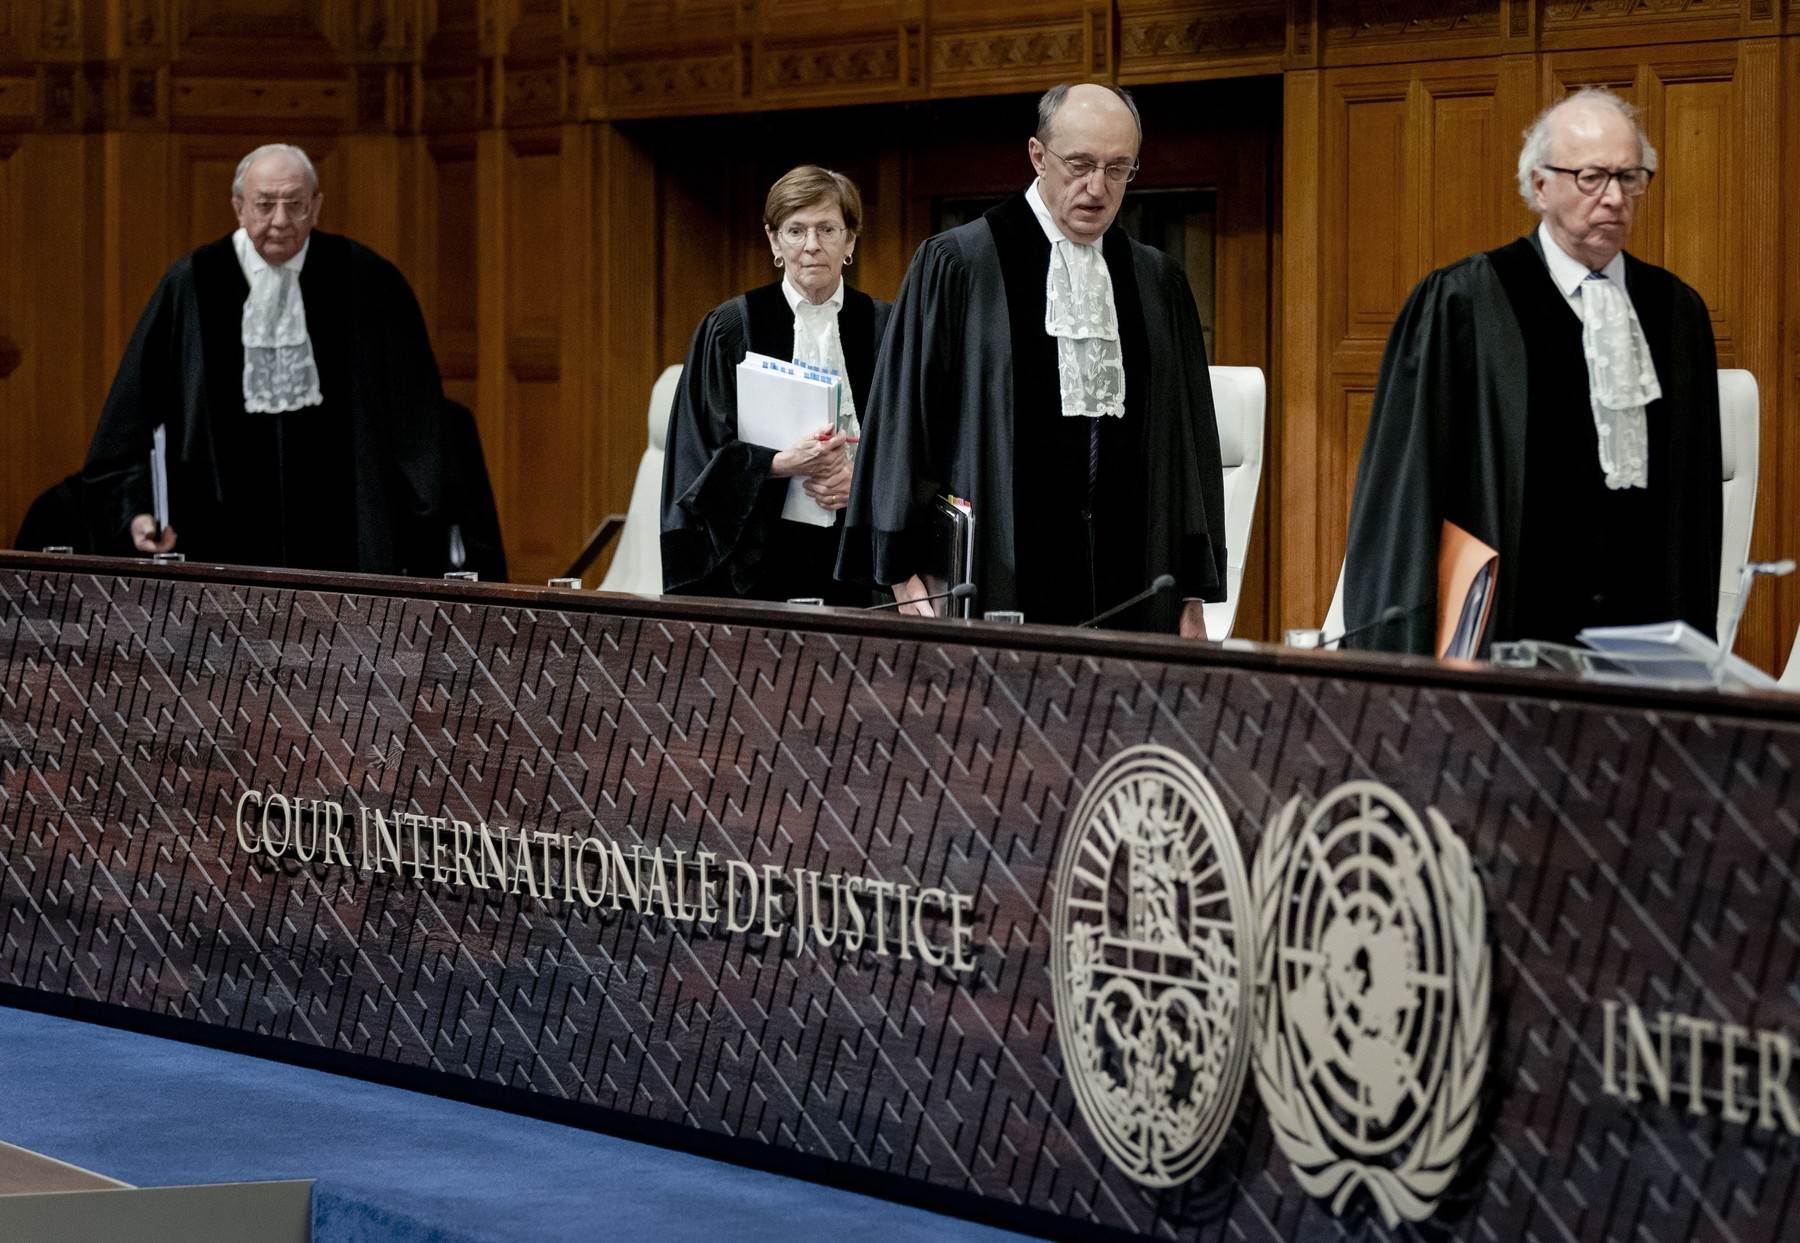  Međunarodni sud pravde u Haagu 